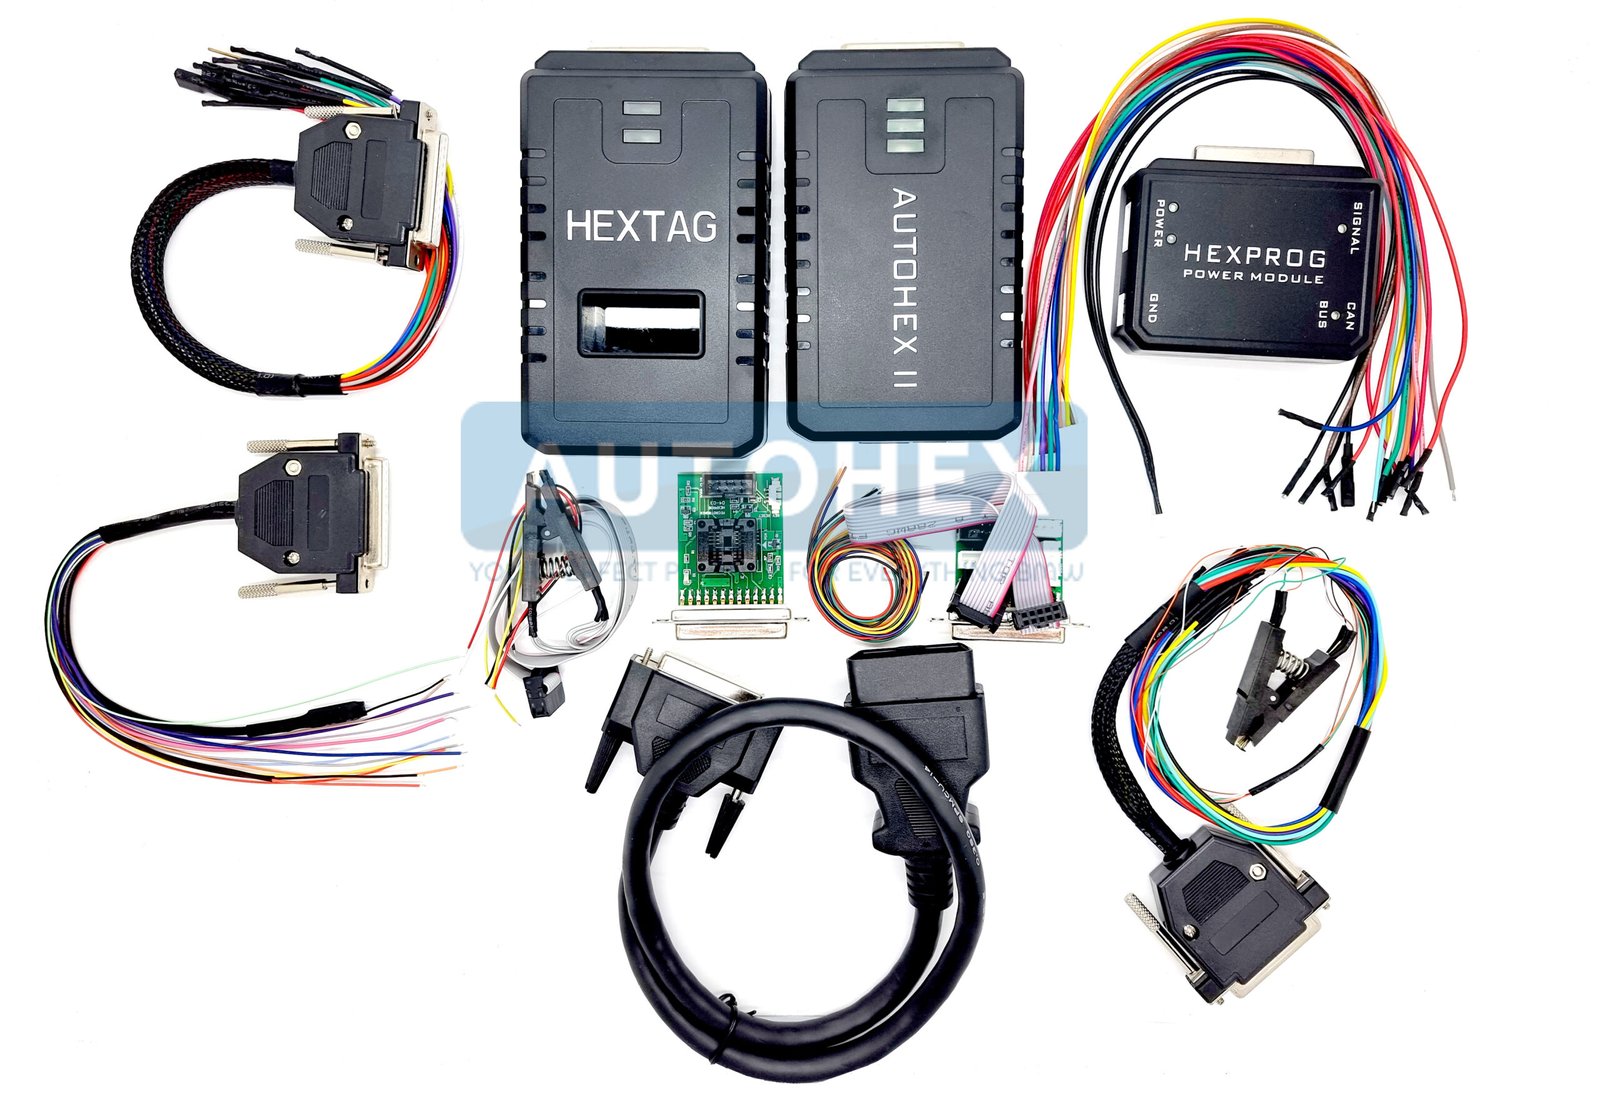 Autohex Full kit